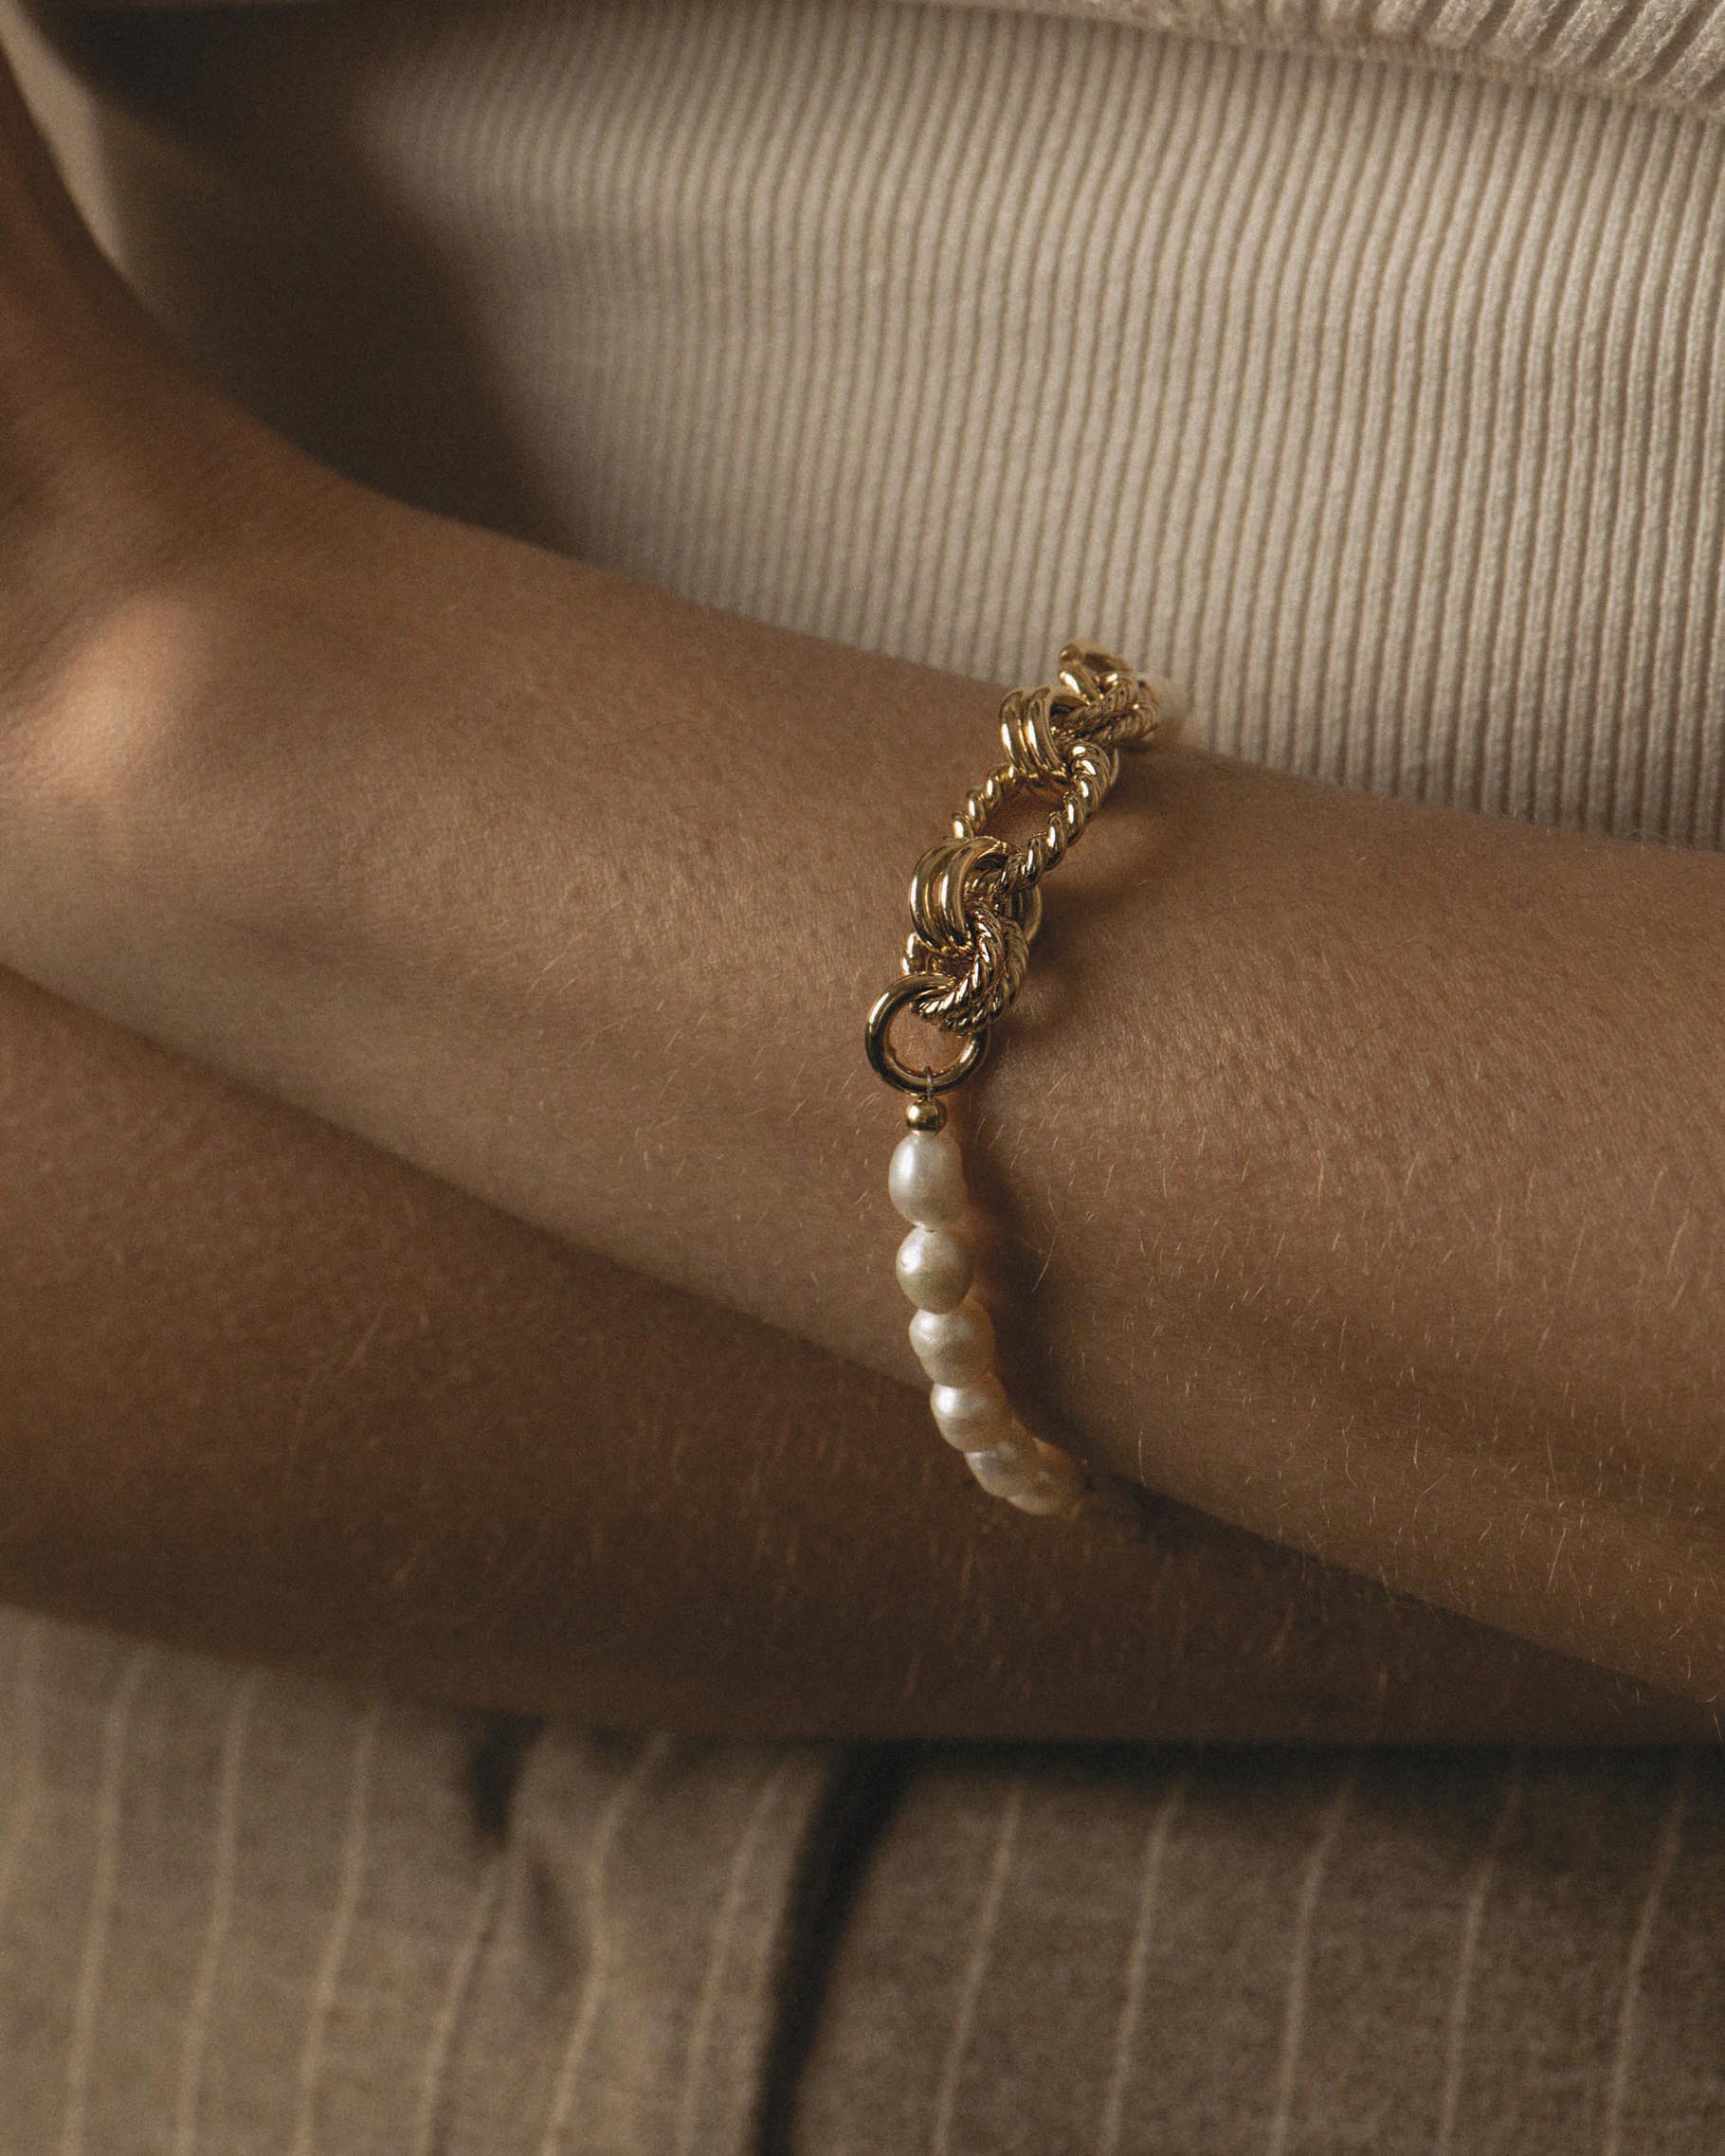 Bracelet en plaqué or 3 microns composé de gros maillons torsadés et ovales de différentes tailles avec des perles de culture, fabriqué en France.